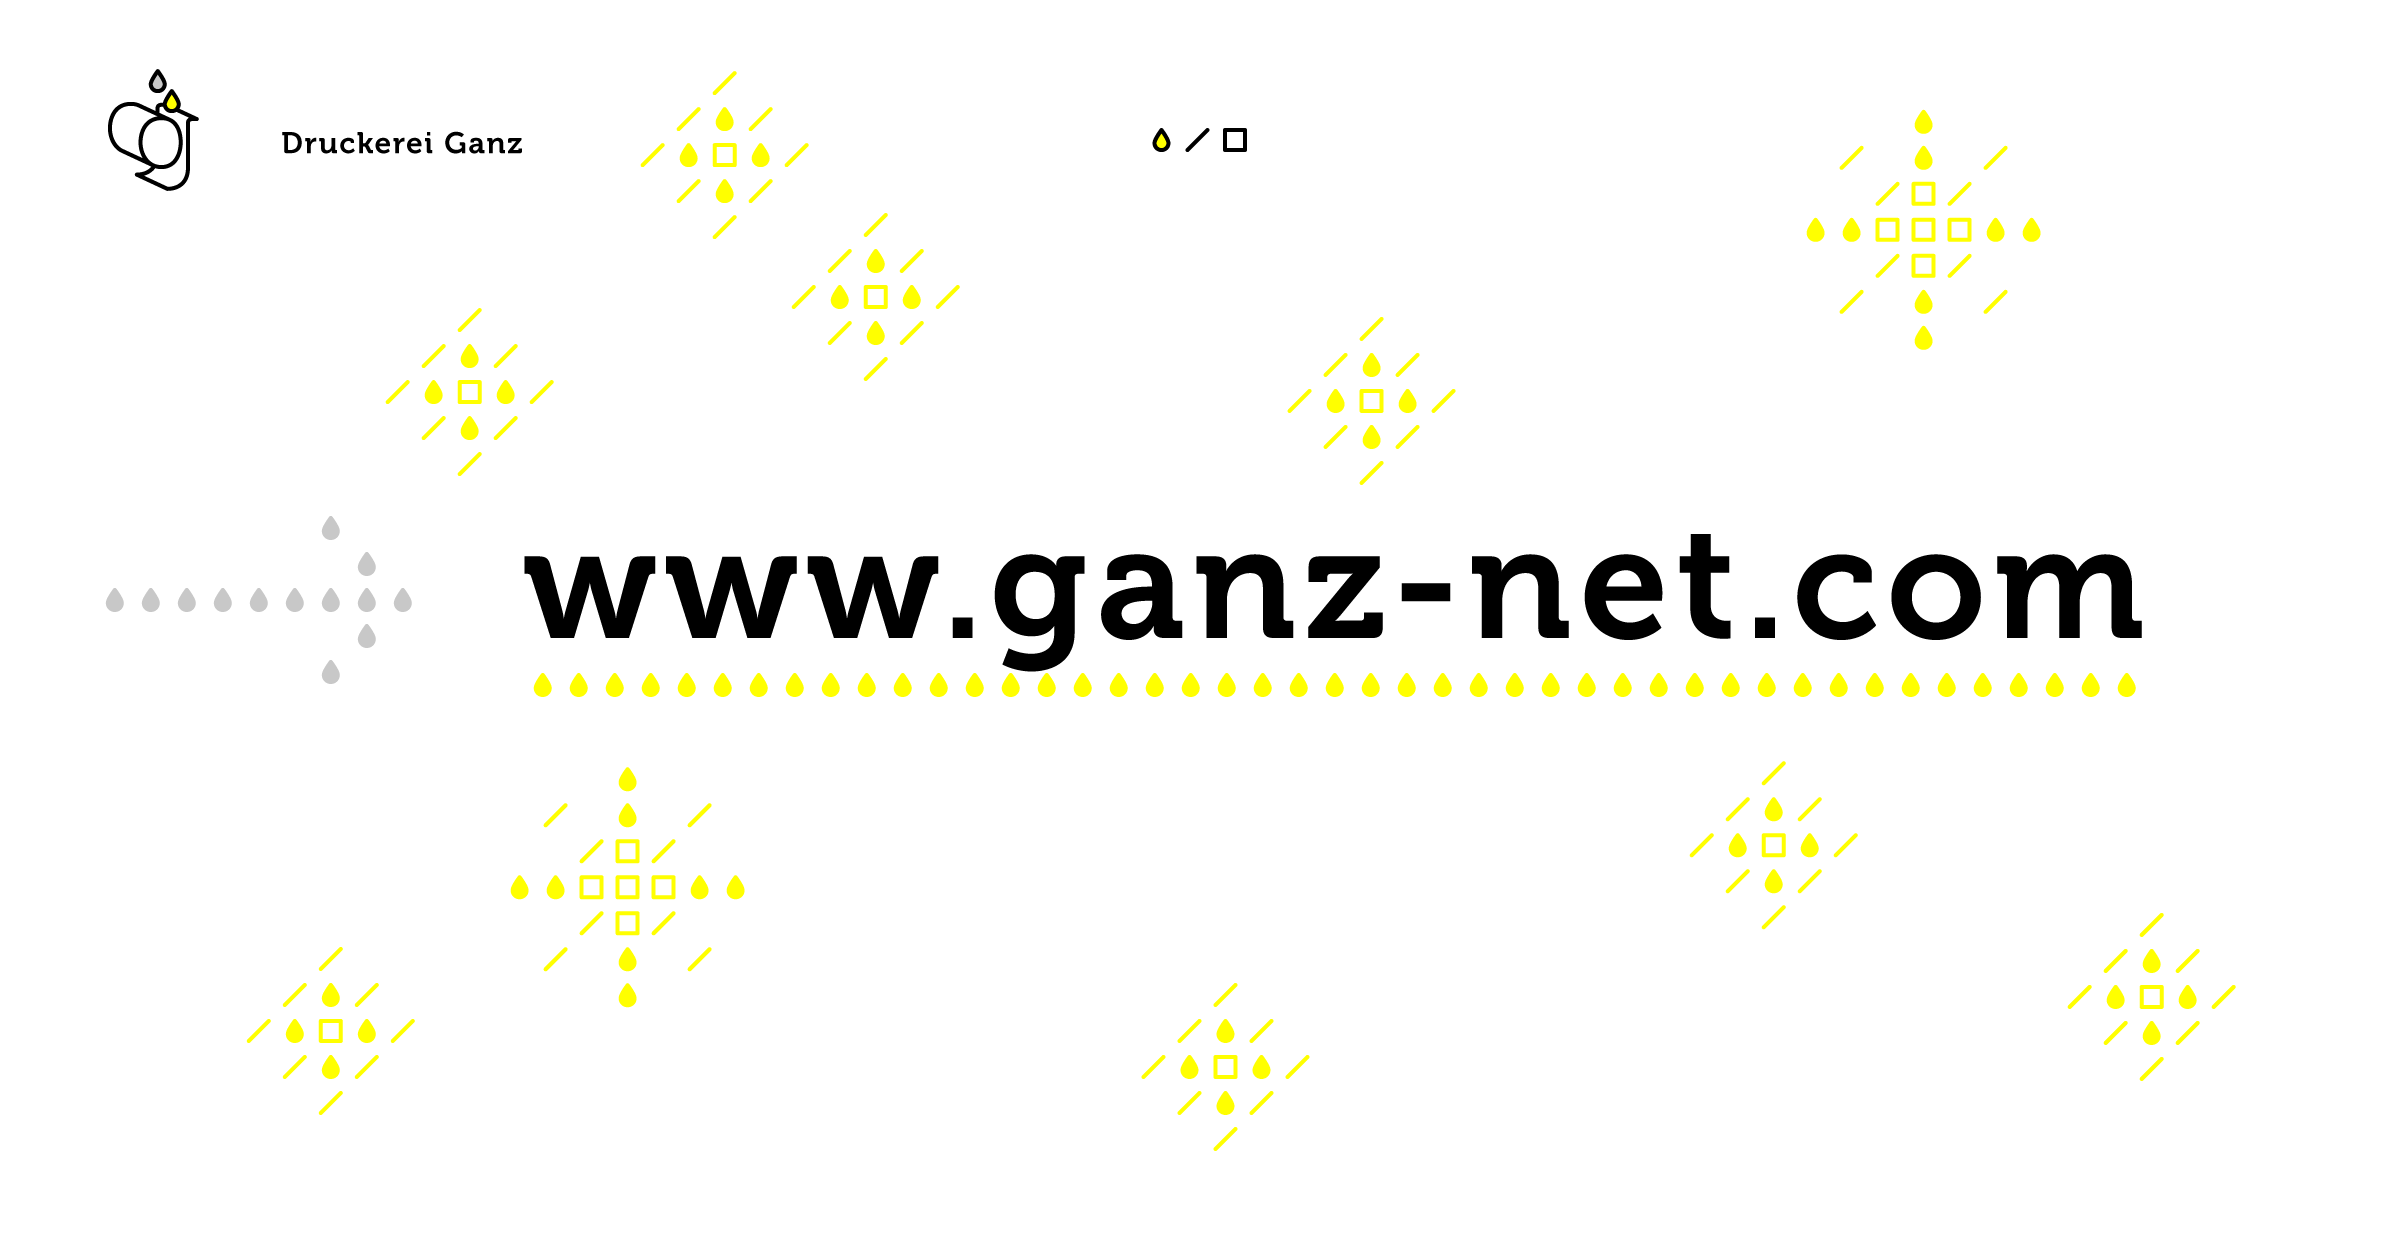 (c) Ganz-net.com